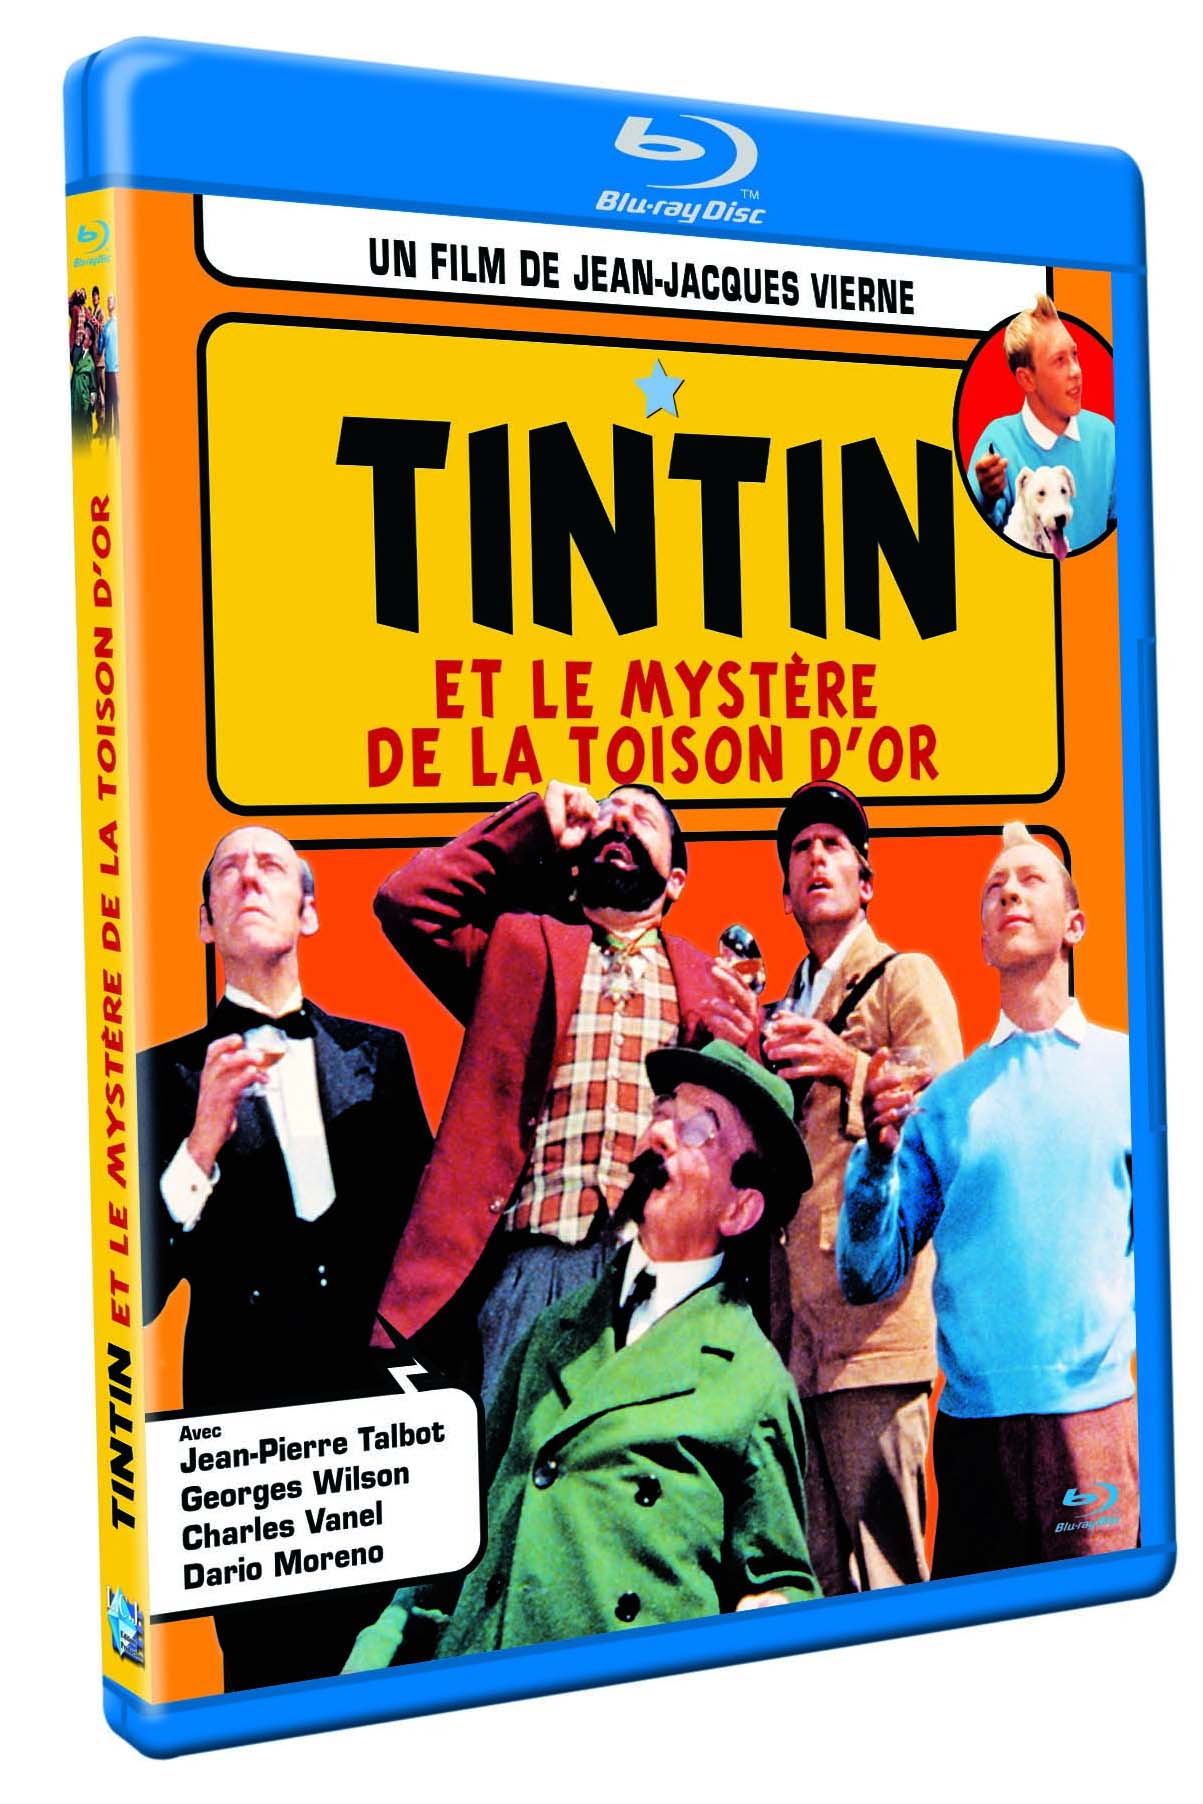 Tintin et le mystère de la toison d'or [Blu-ray]